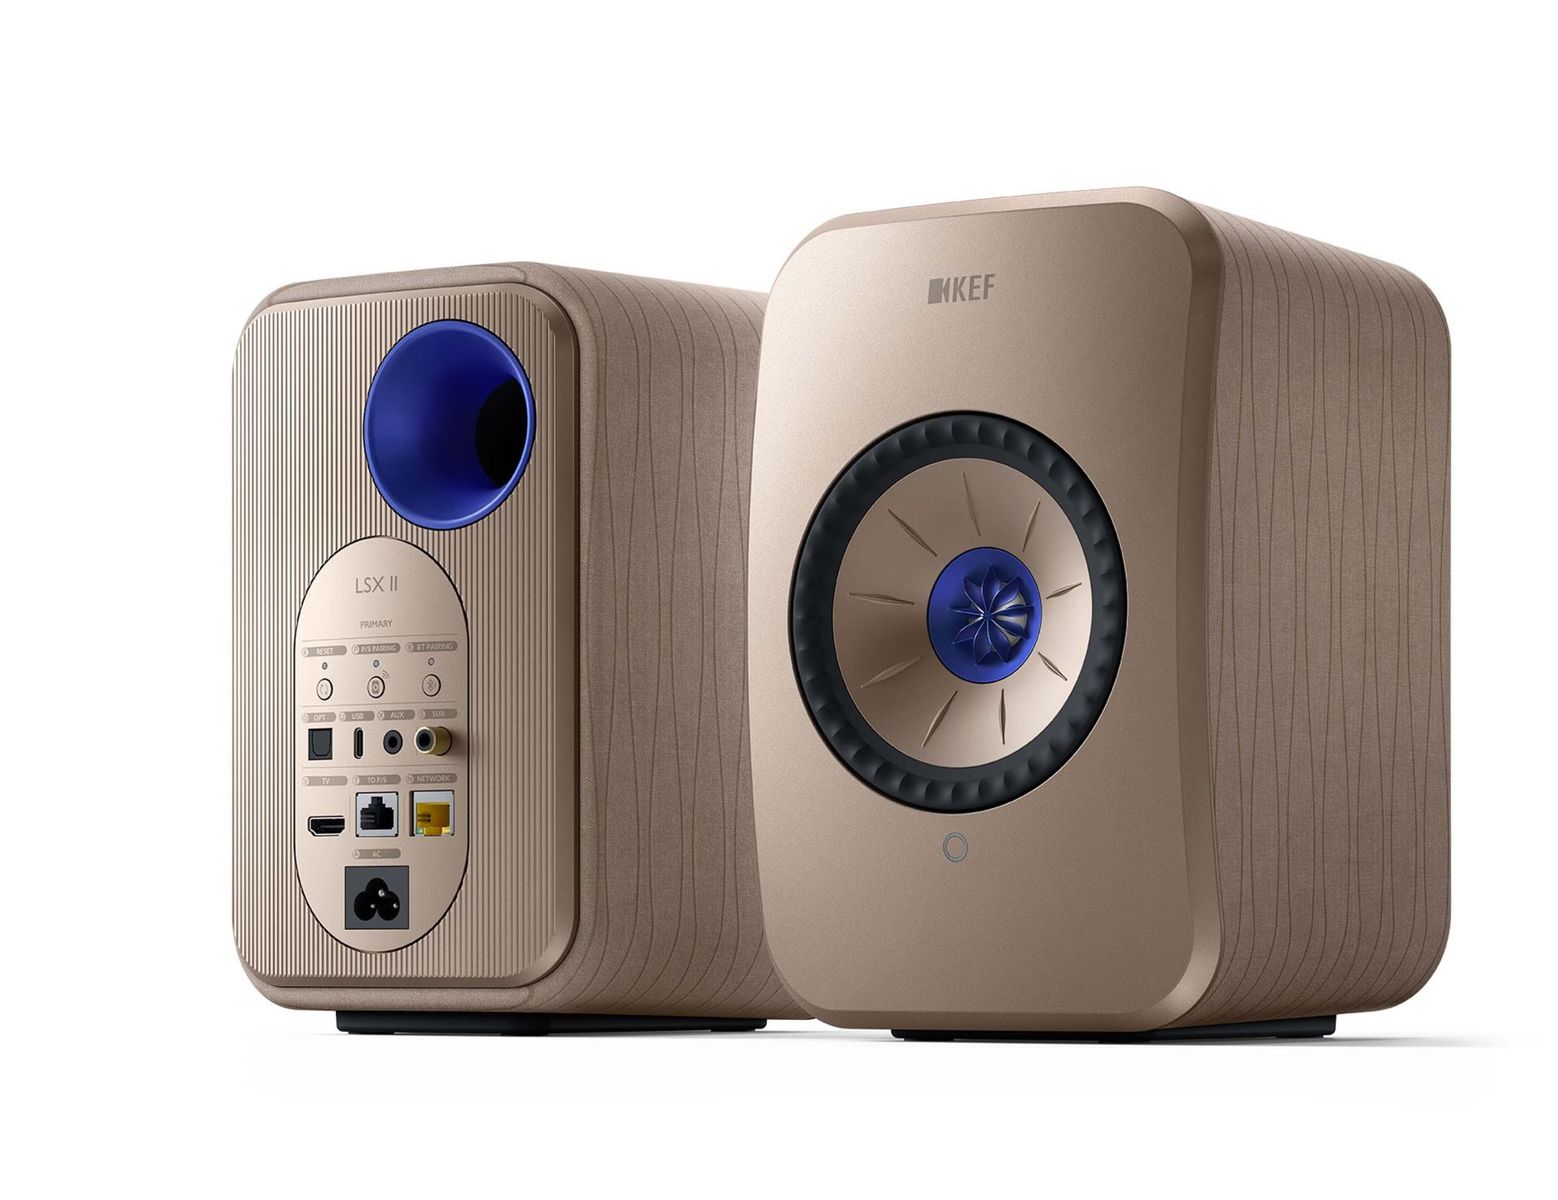 KEF - LSX II Wireless Stereo Speakers - Gold